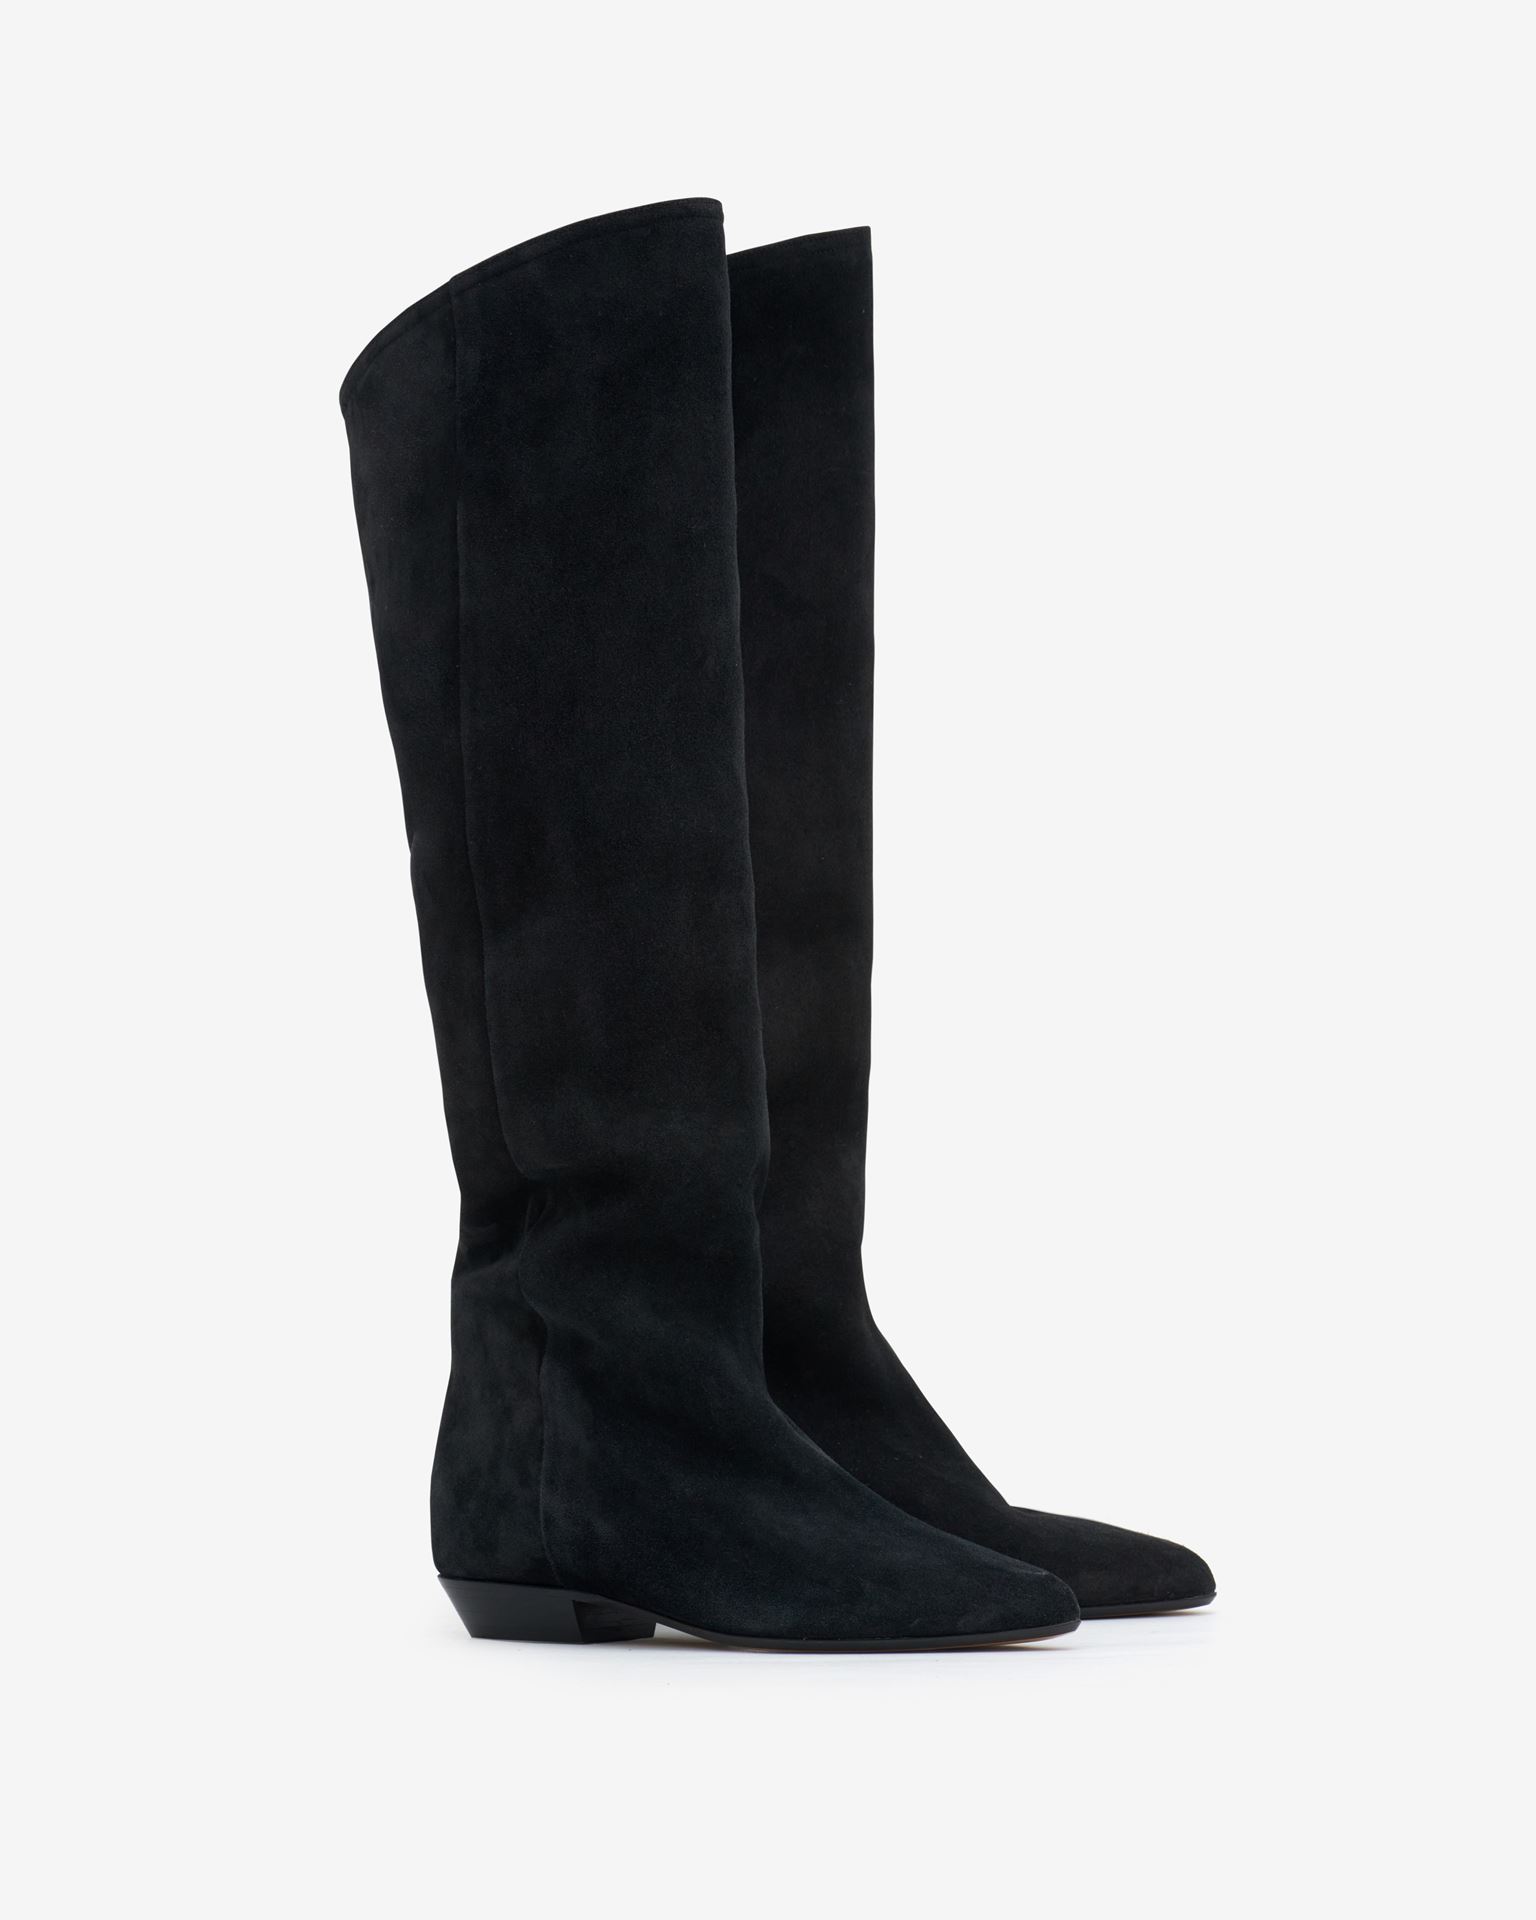 Isabel Marant, Skarlet Suede Leather Boots - Women - Black